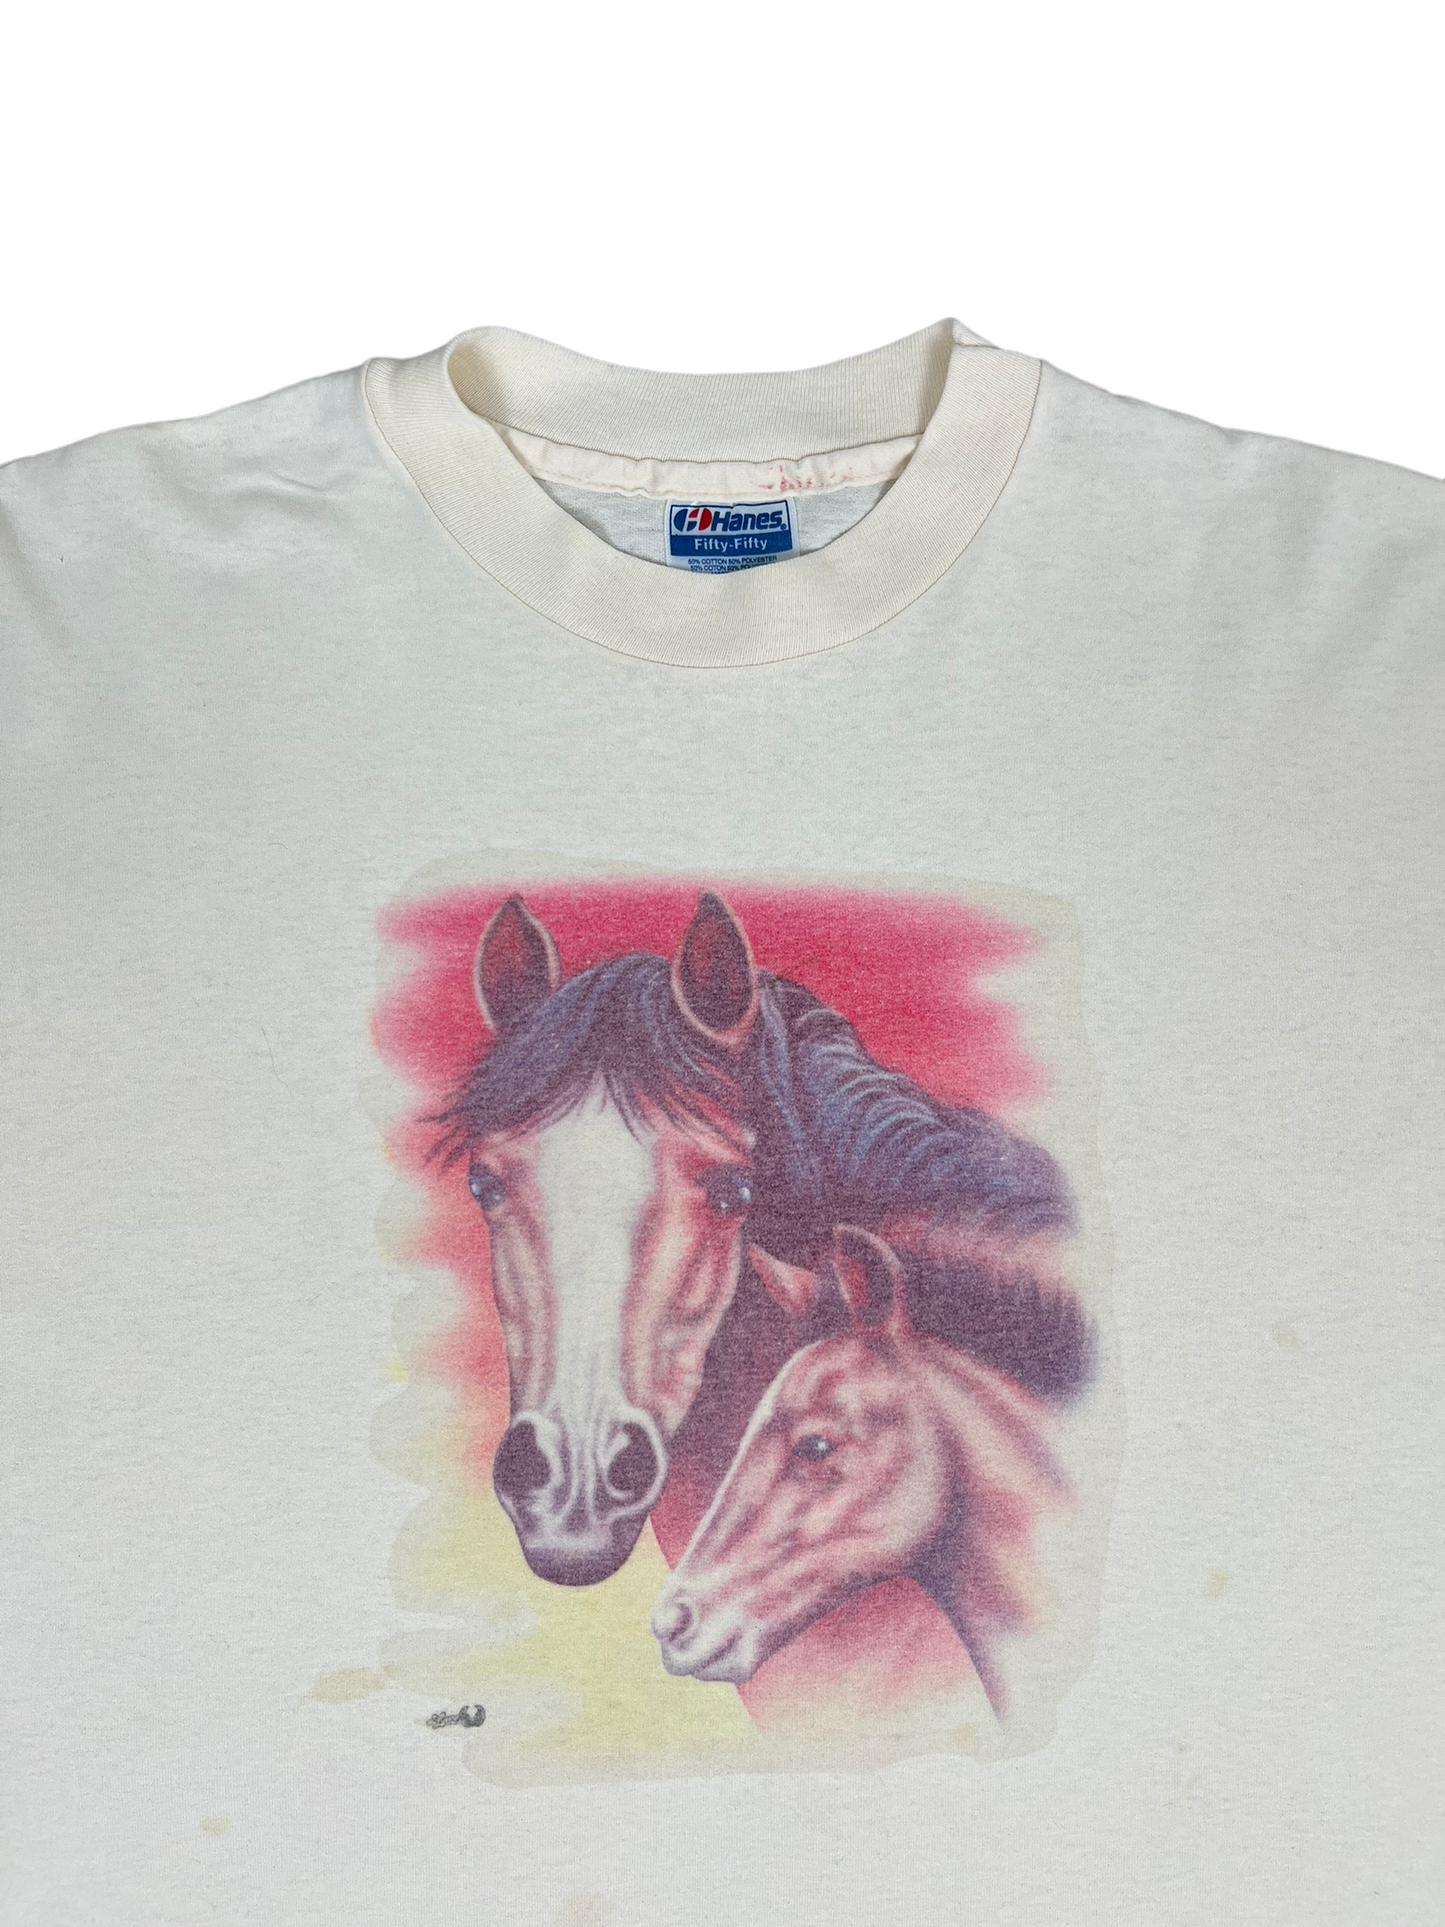 Women's Vintage 90’s Horses T Shirt - Large